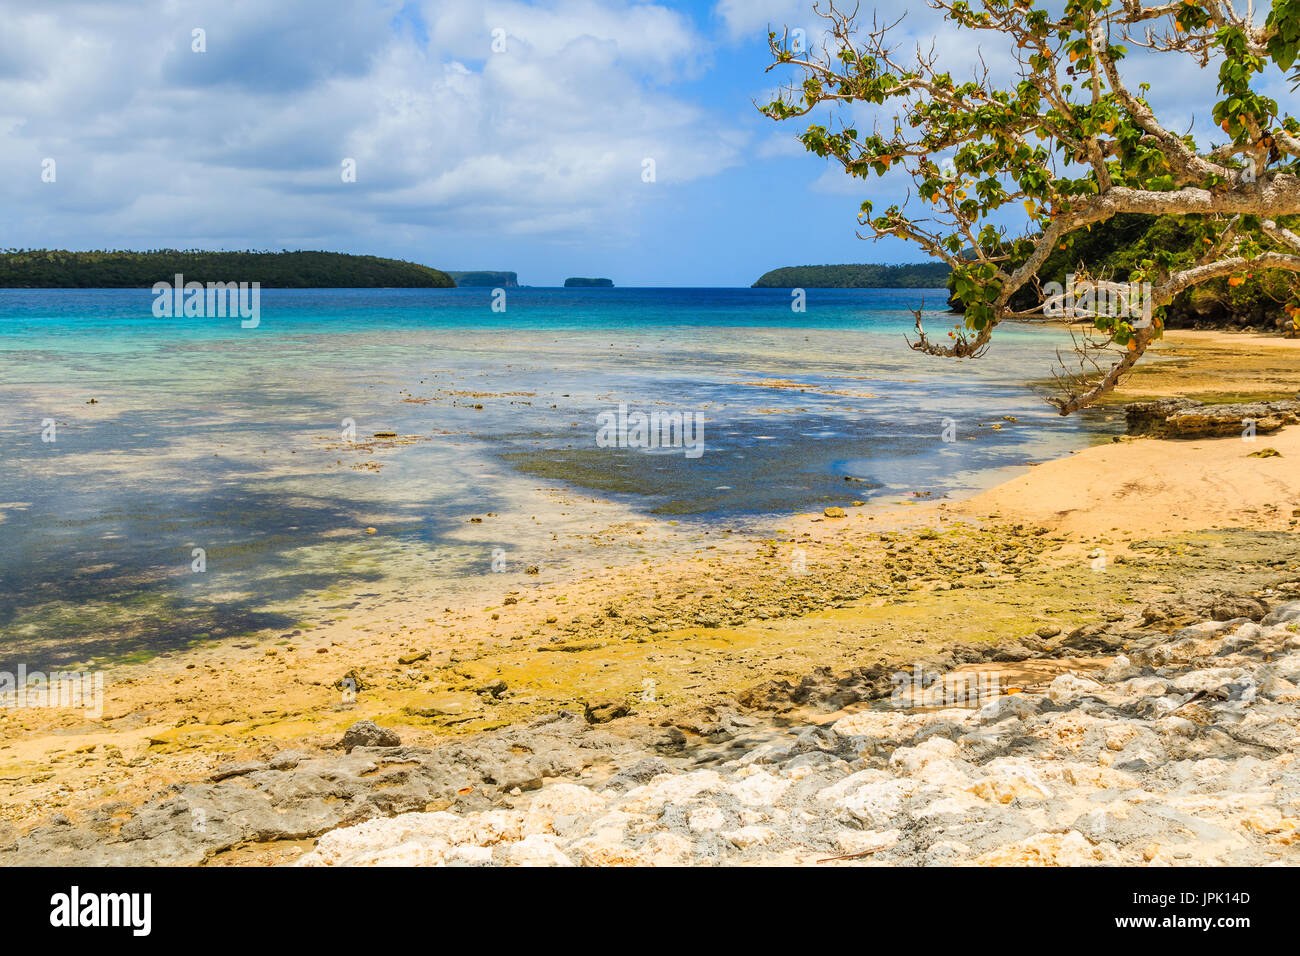 Archipel Vava'u, Tonga, Neiafu. Vue de la plage tropicale dans l'île de Vava'u. Banque D'Images